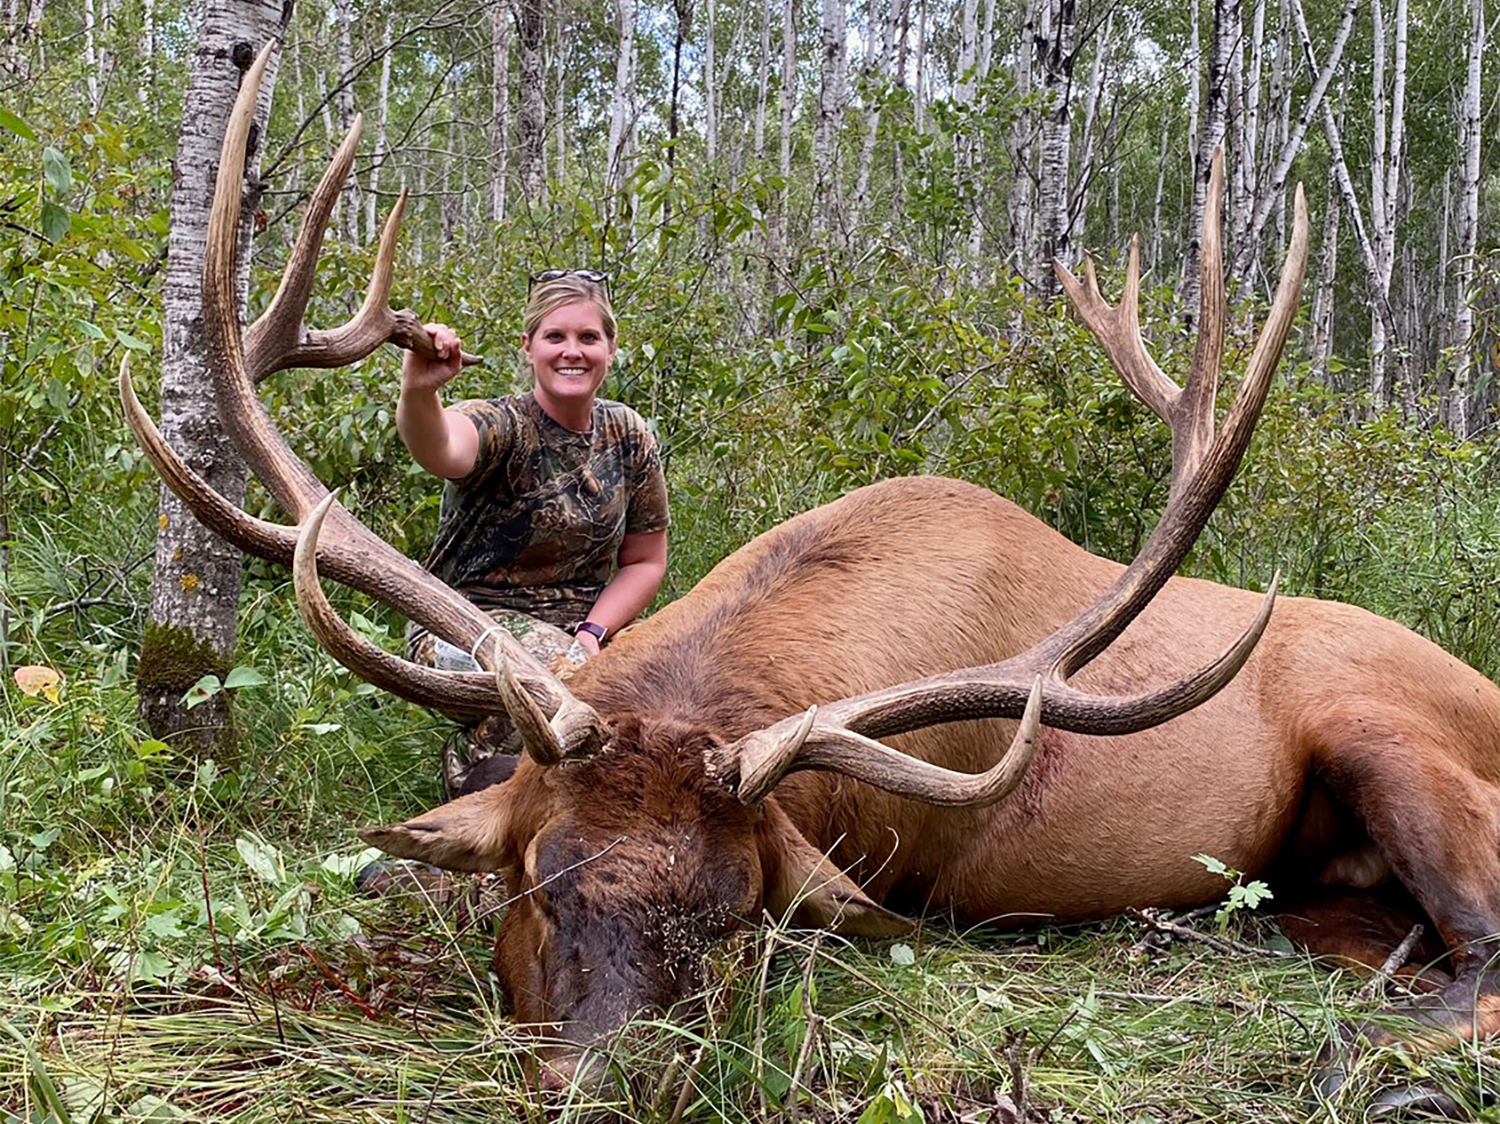 A woman kneels behind a large elk.